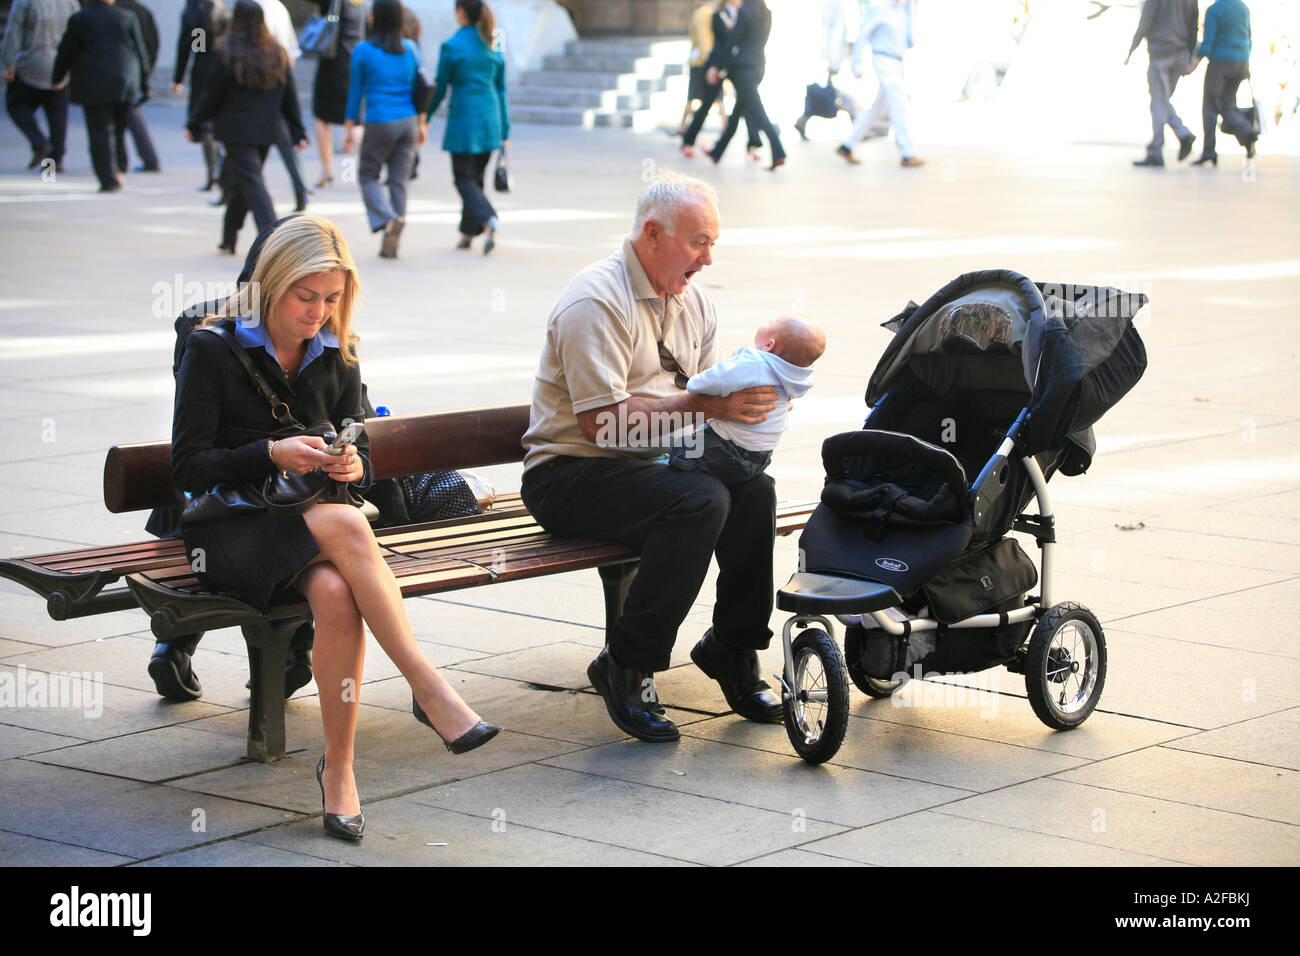 Großvater spielt mit Baby, während eine junge blonde Frau mit ihrem Handy spielt. Stockfoto